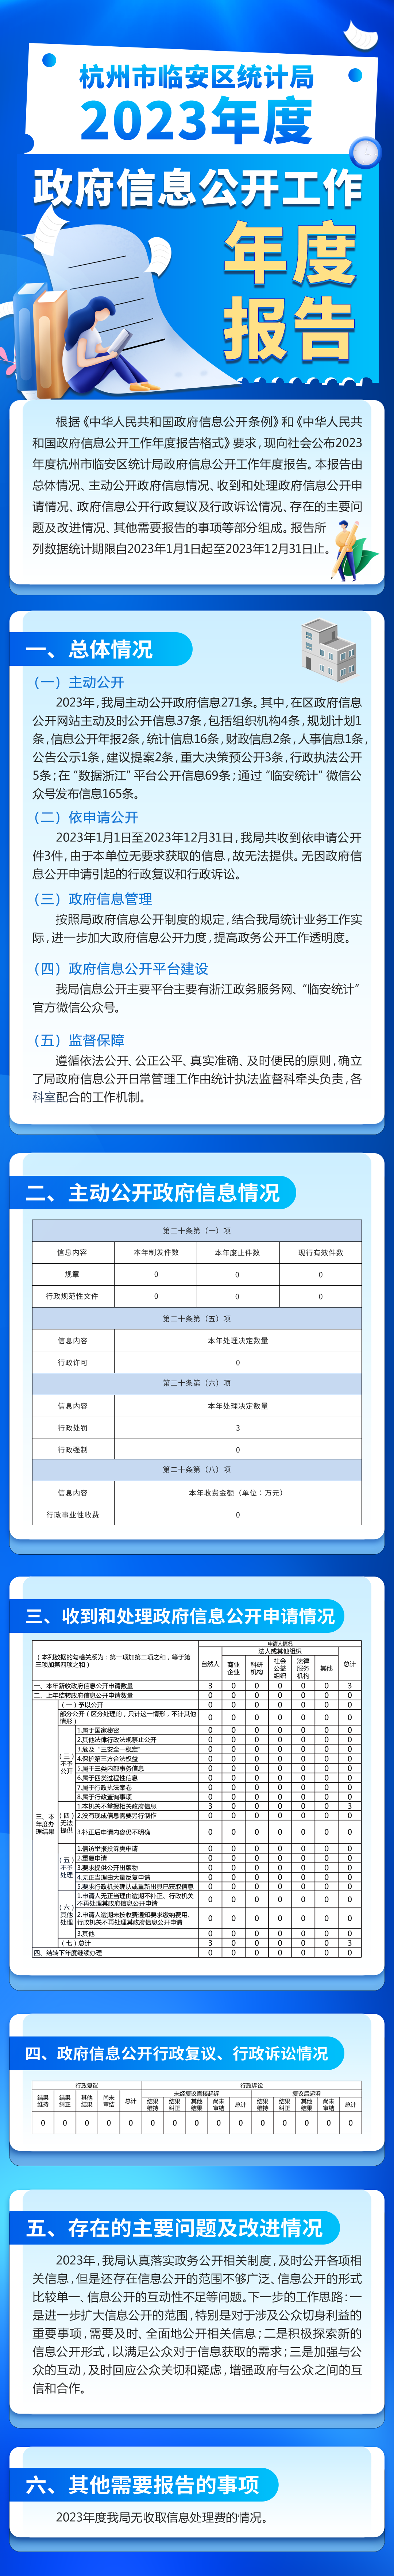 图解杭州市临安区统计局2023年度政府信息公开工作年度报告.png